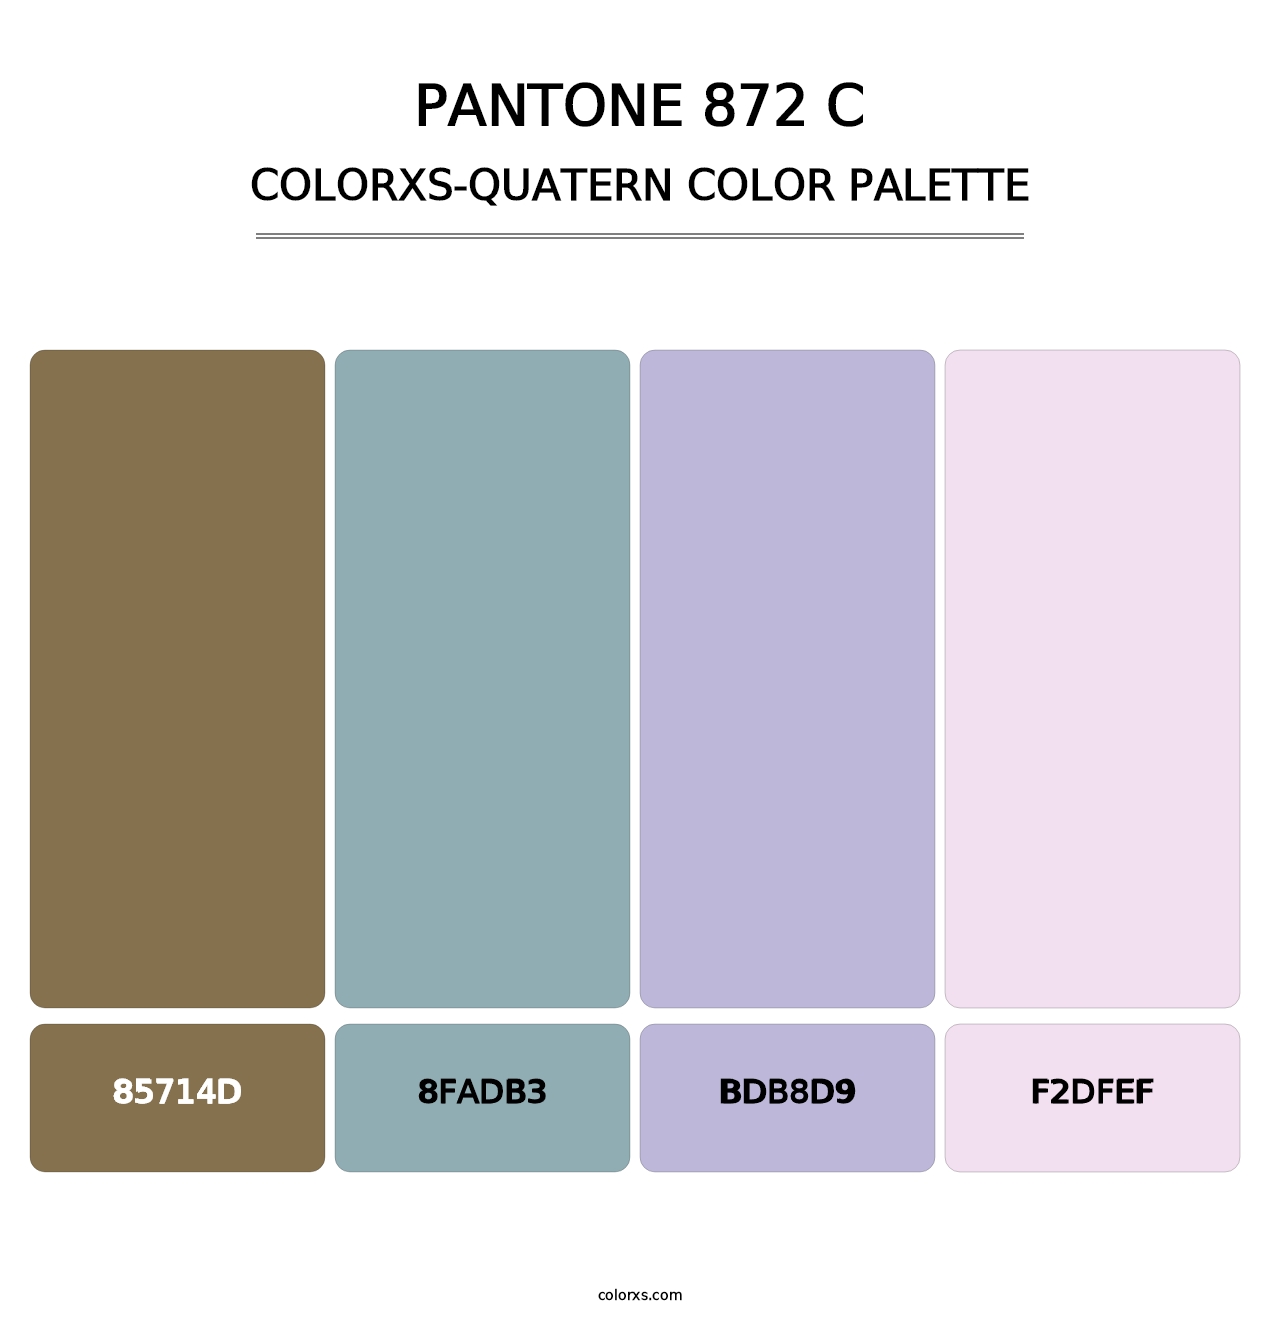 PANTONE 872 C - Colorxs Quatern Palette